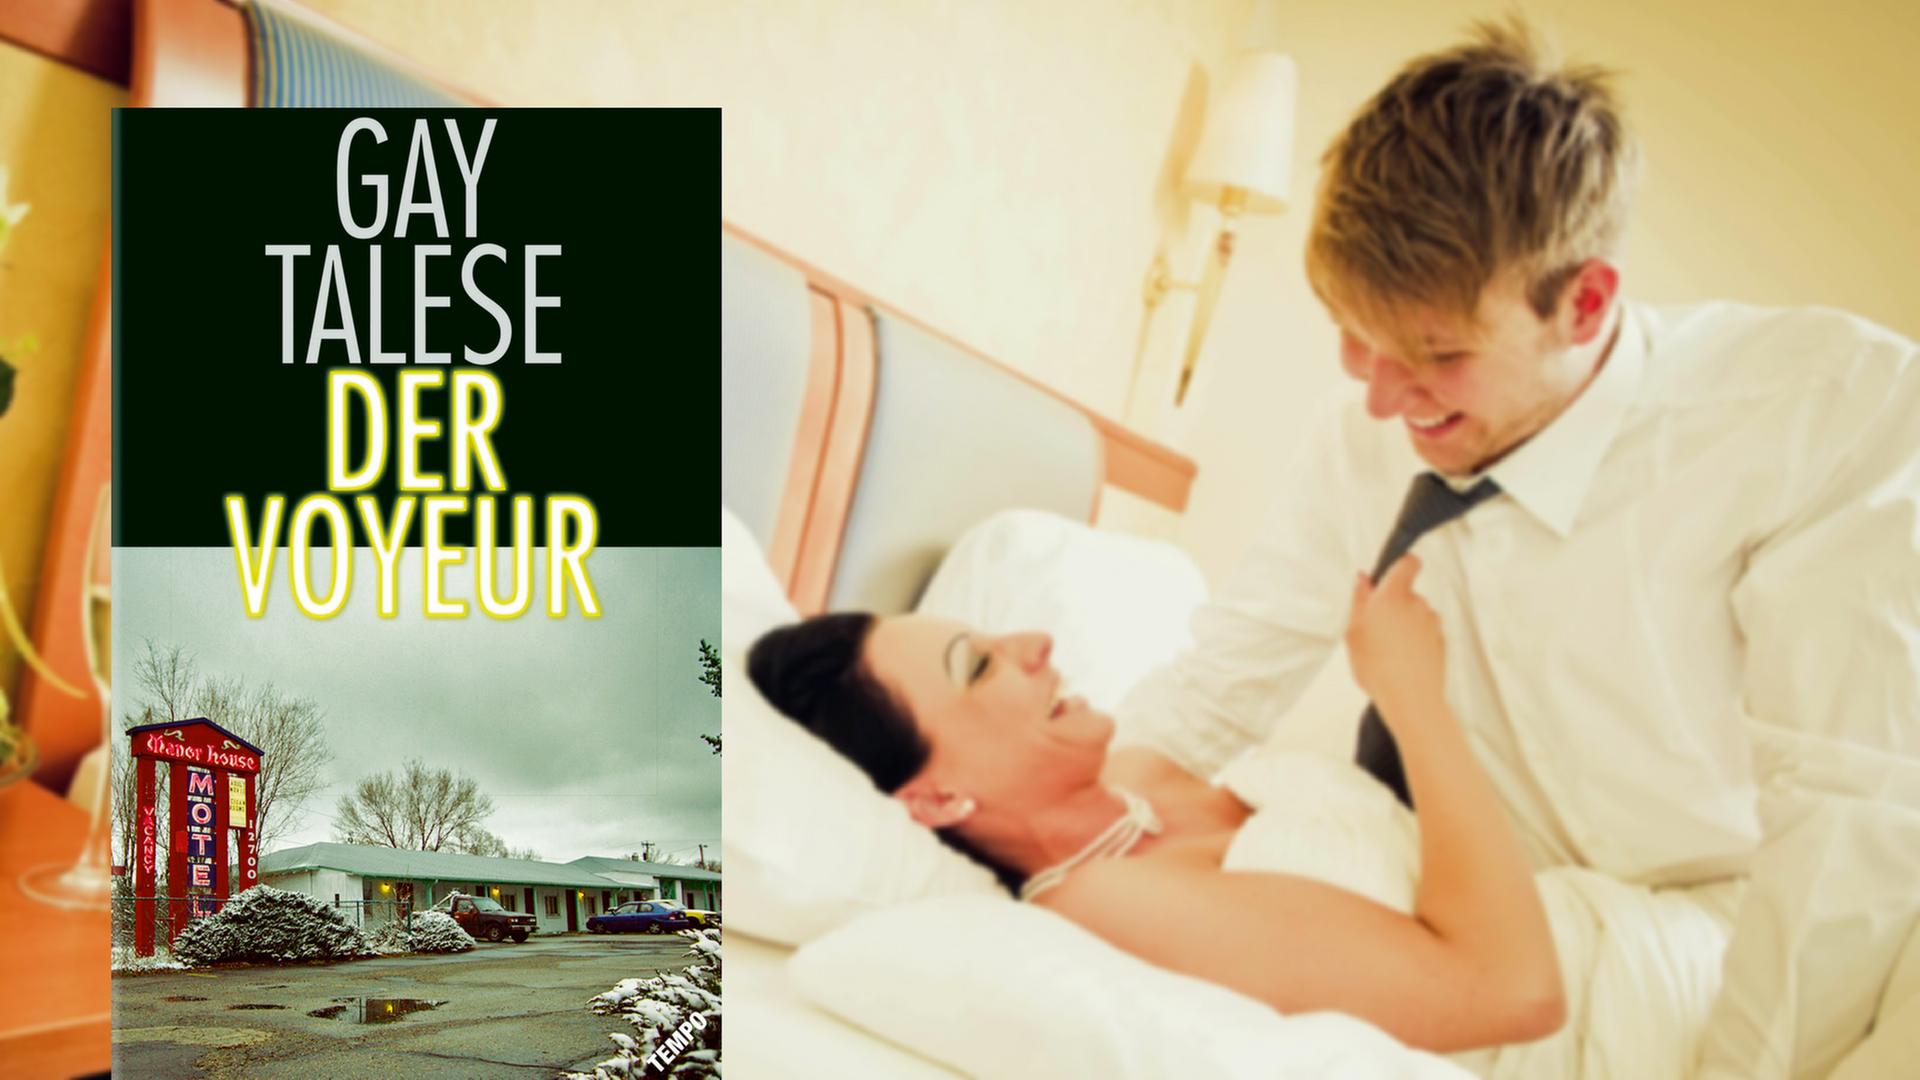 Cover des Buchs "Der Voyeur", im Hintergrund ein Brautpaar im Bett eines Hotelzimmers